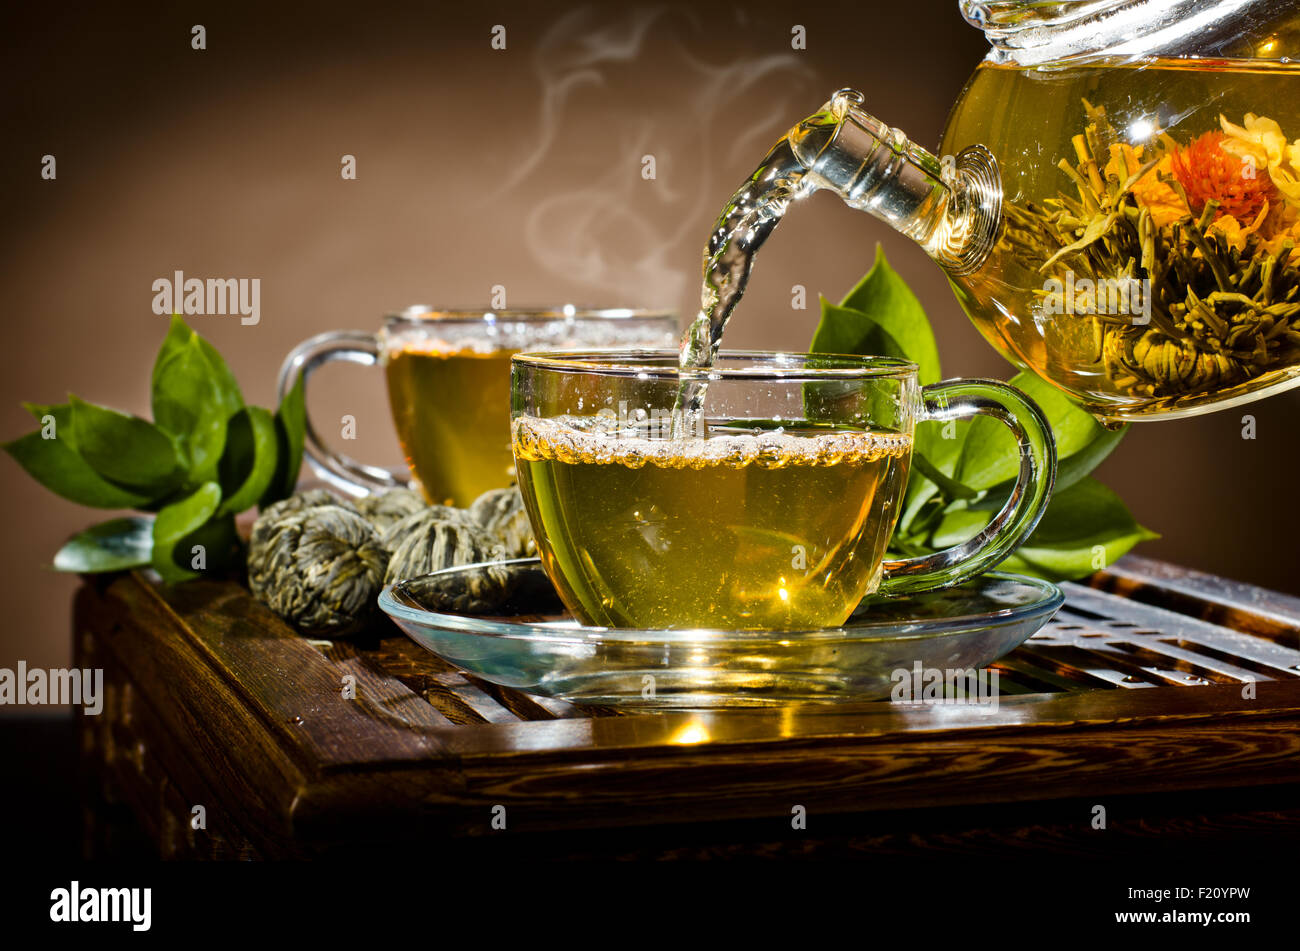 Photo horizontale, de la théière en verre tasse thé vert en débit sur fond brun, cérémonie du thé Banque D'Images